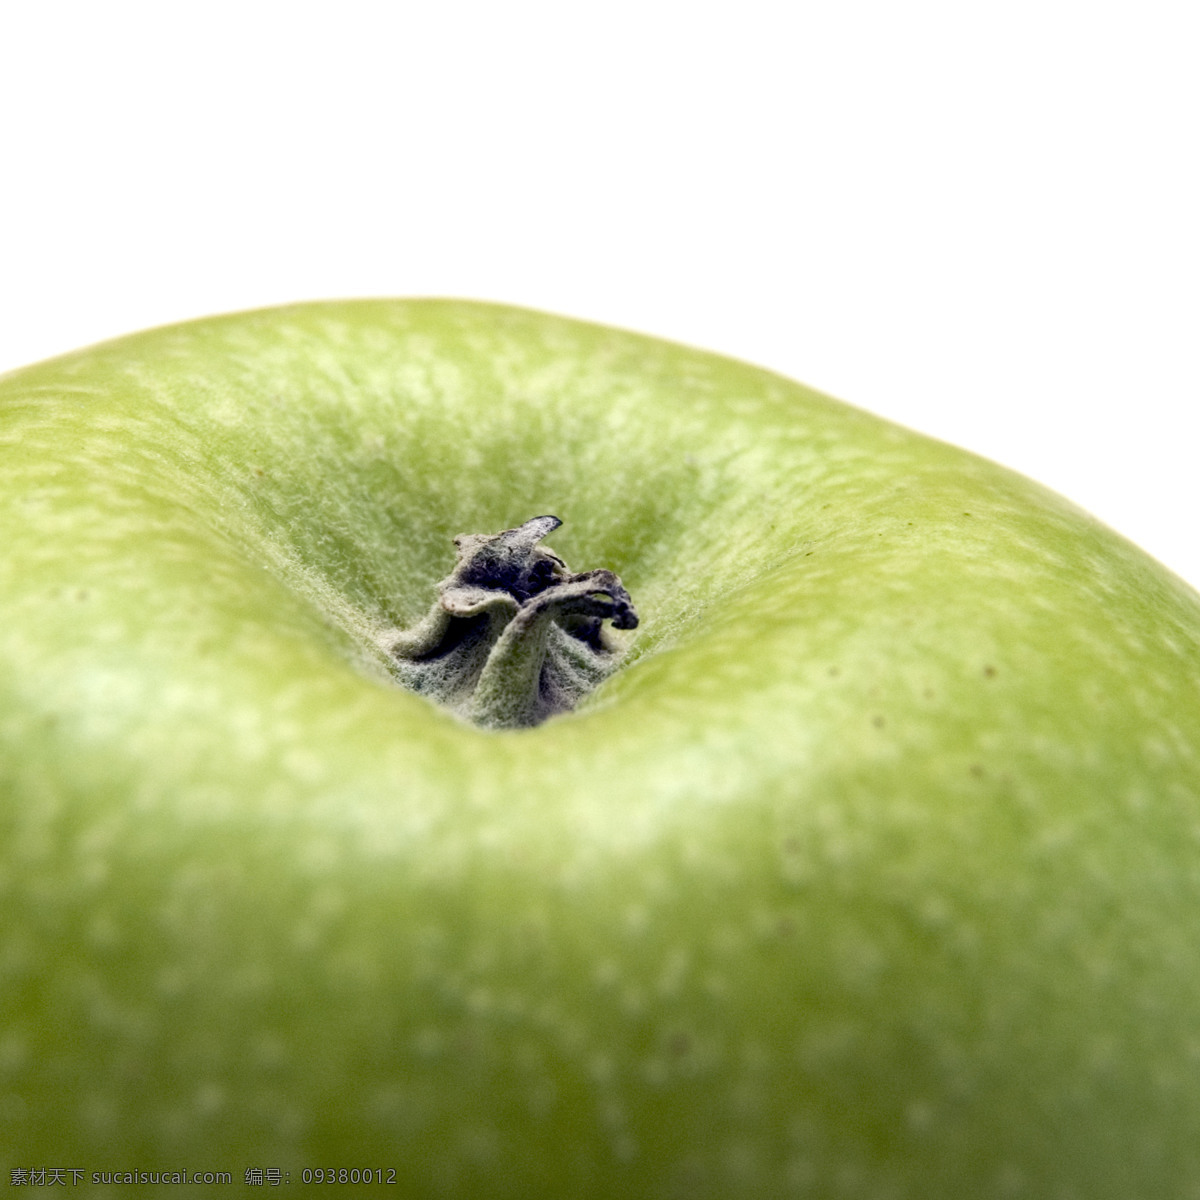 高清 苹果 青苹果 食物 水果 水果摄影 水果素材 新鲜水果 苹果图片 餐饮美食